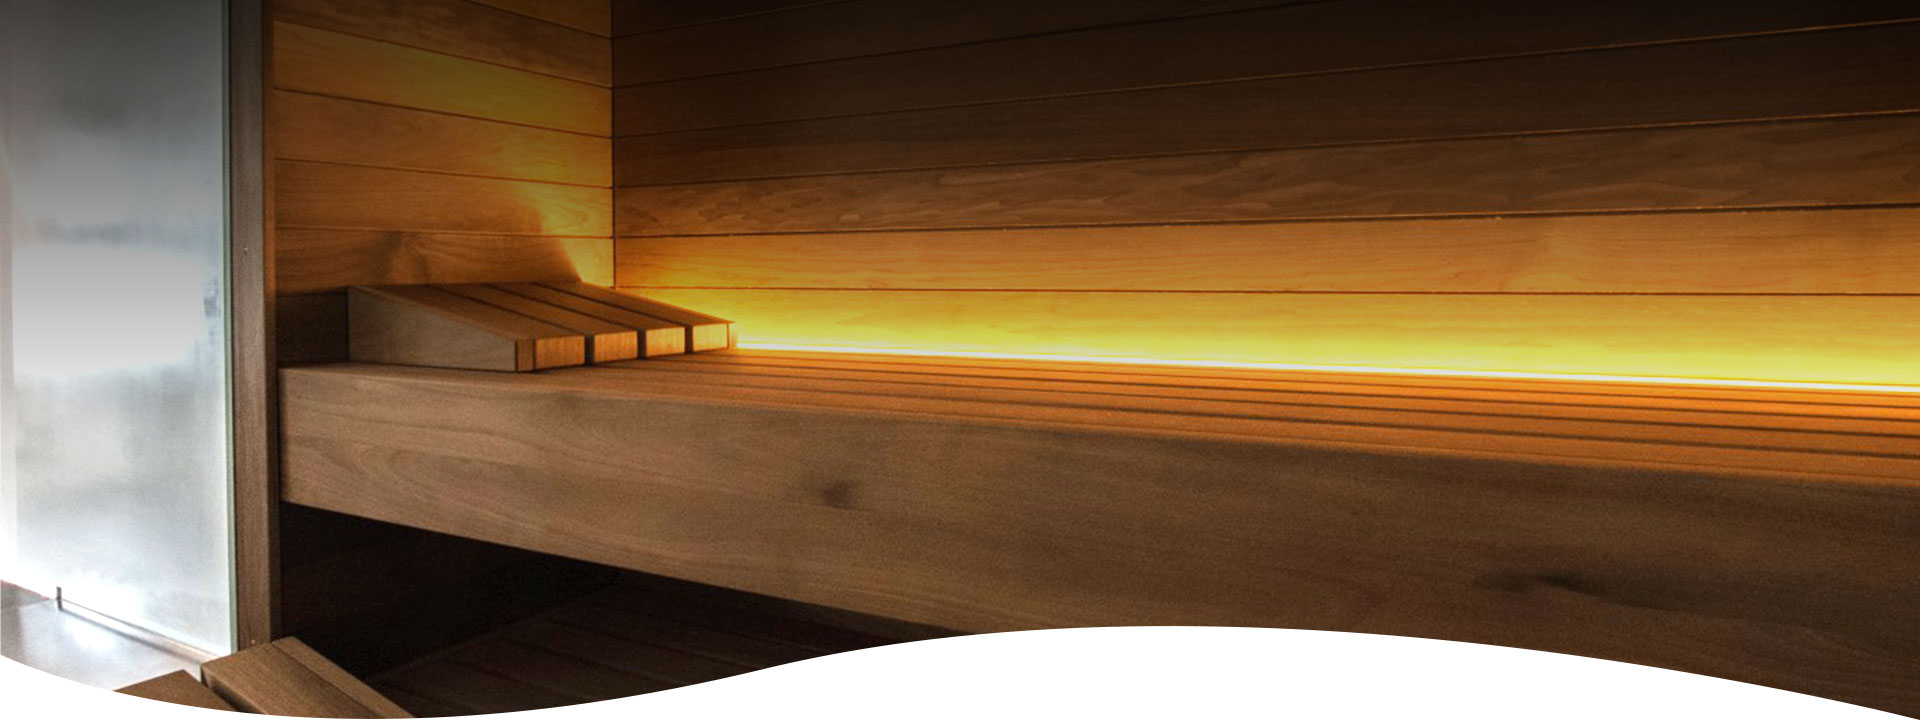 Verlicht sauna interieur.